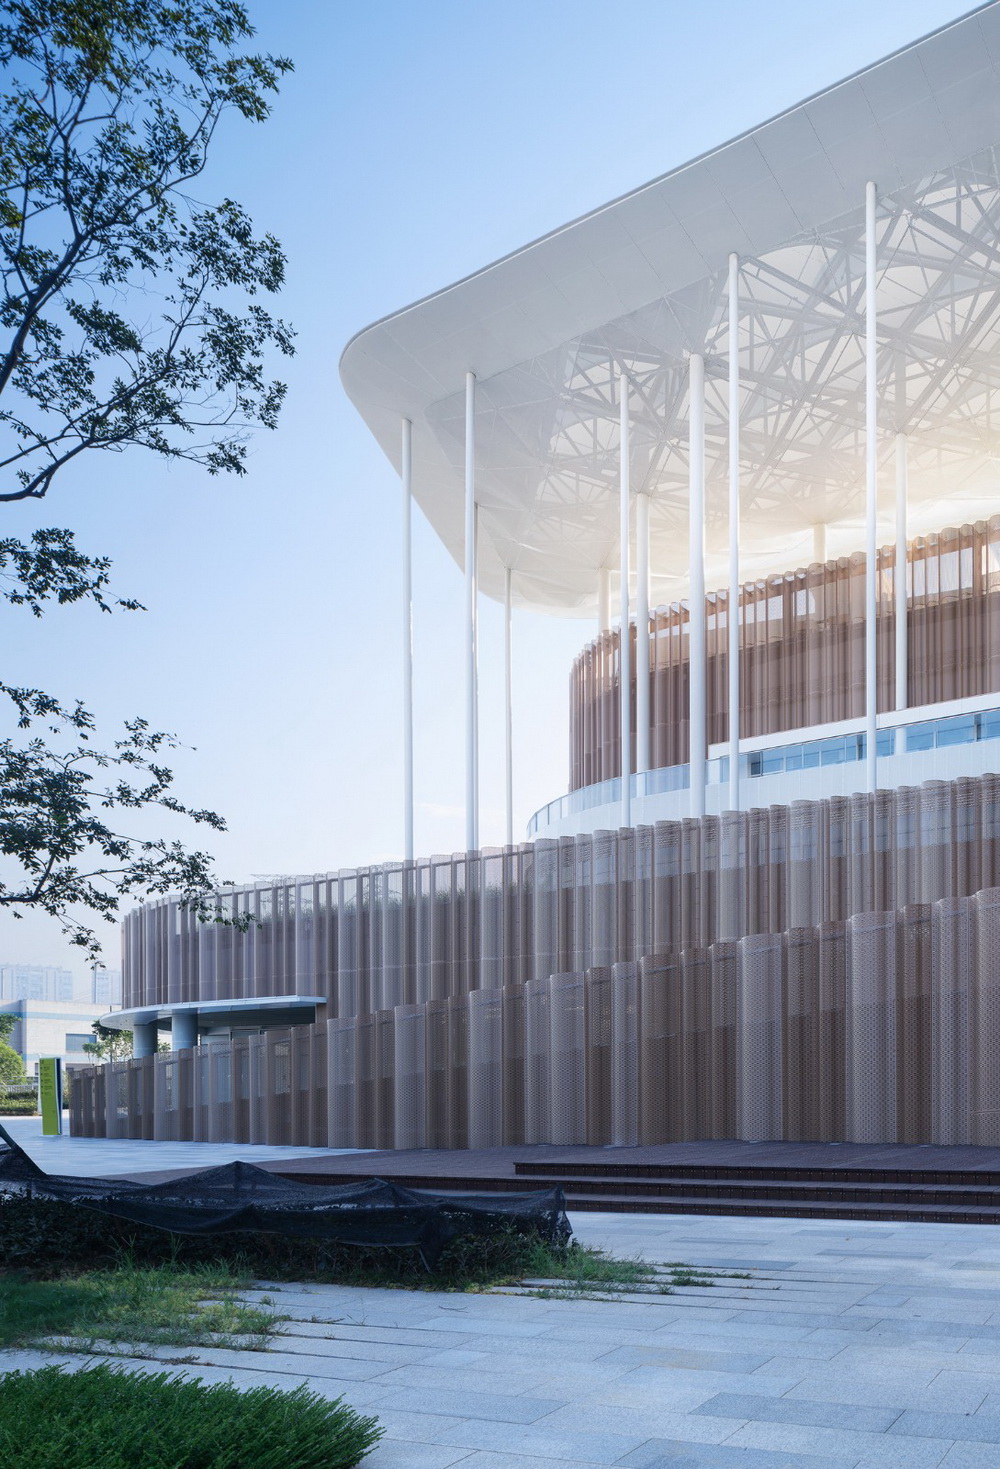 杭州亚运会棒垒球体育文化中心  建筑设计 / 浙江大学建筑设计研究院